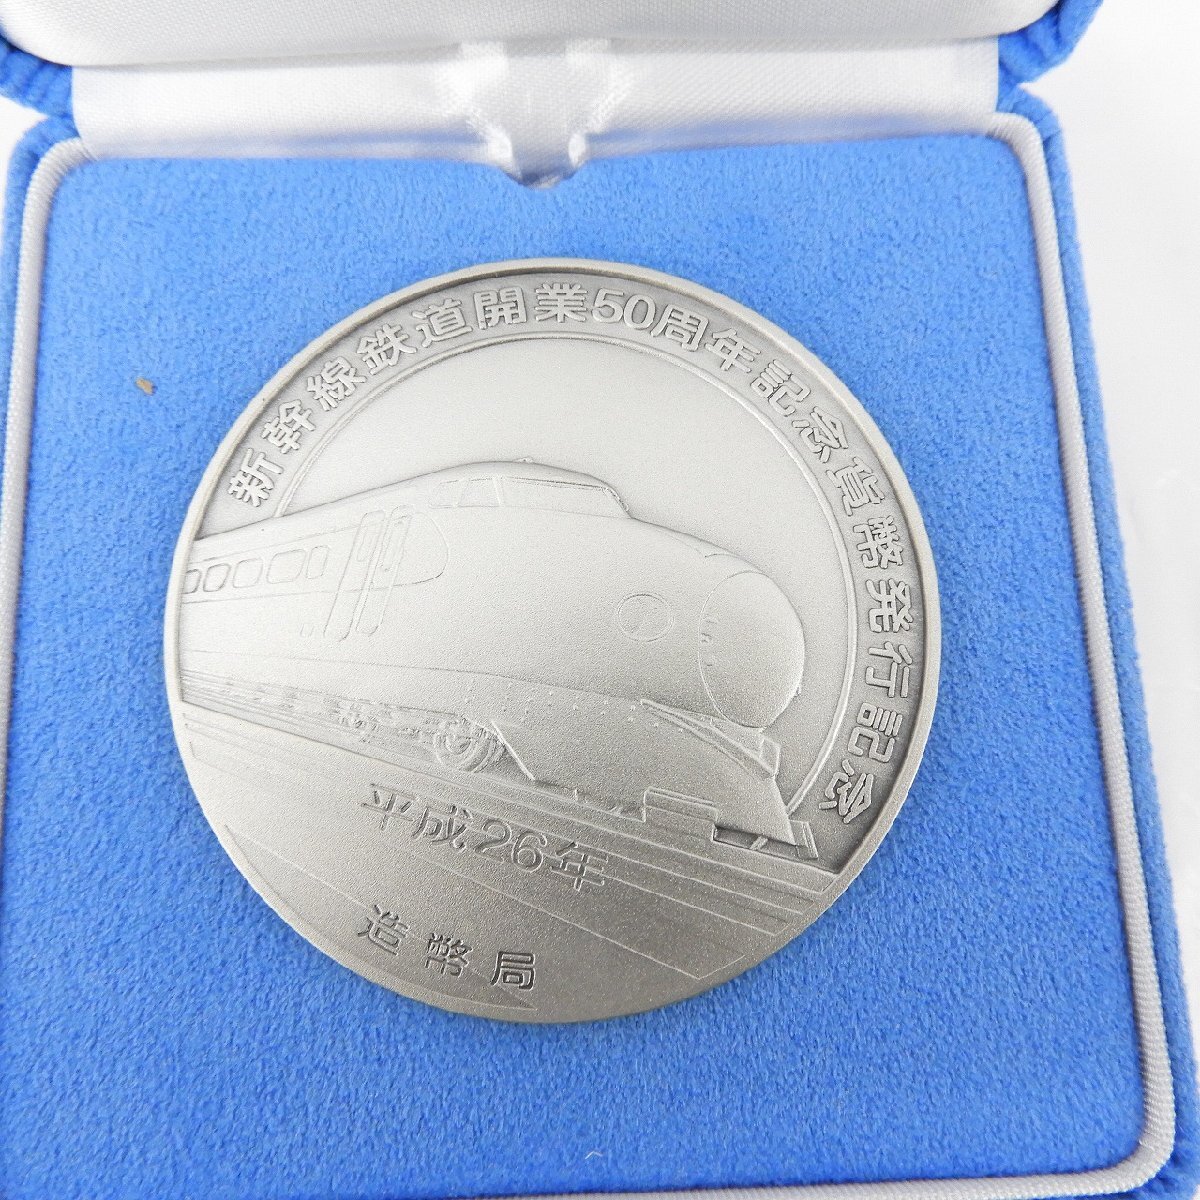 【記念メダル】新幹線鉄道開業50周年記念貨幣発行記念メダル 165.4g 箱付 807117328 0413の画像4